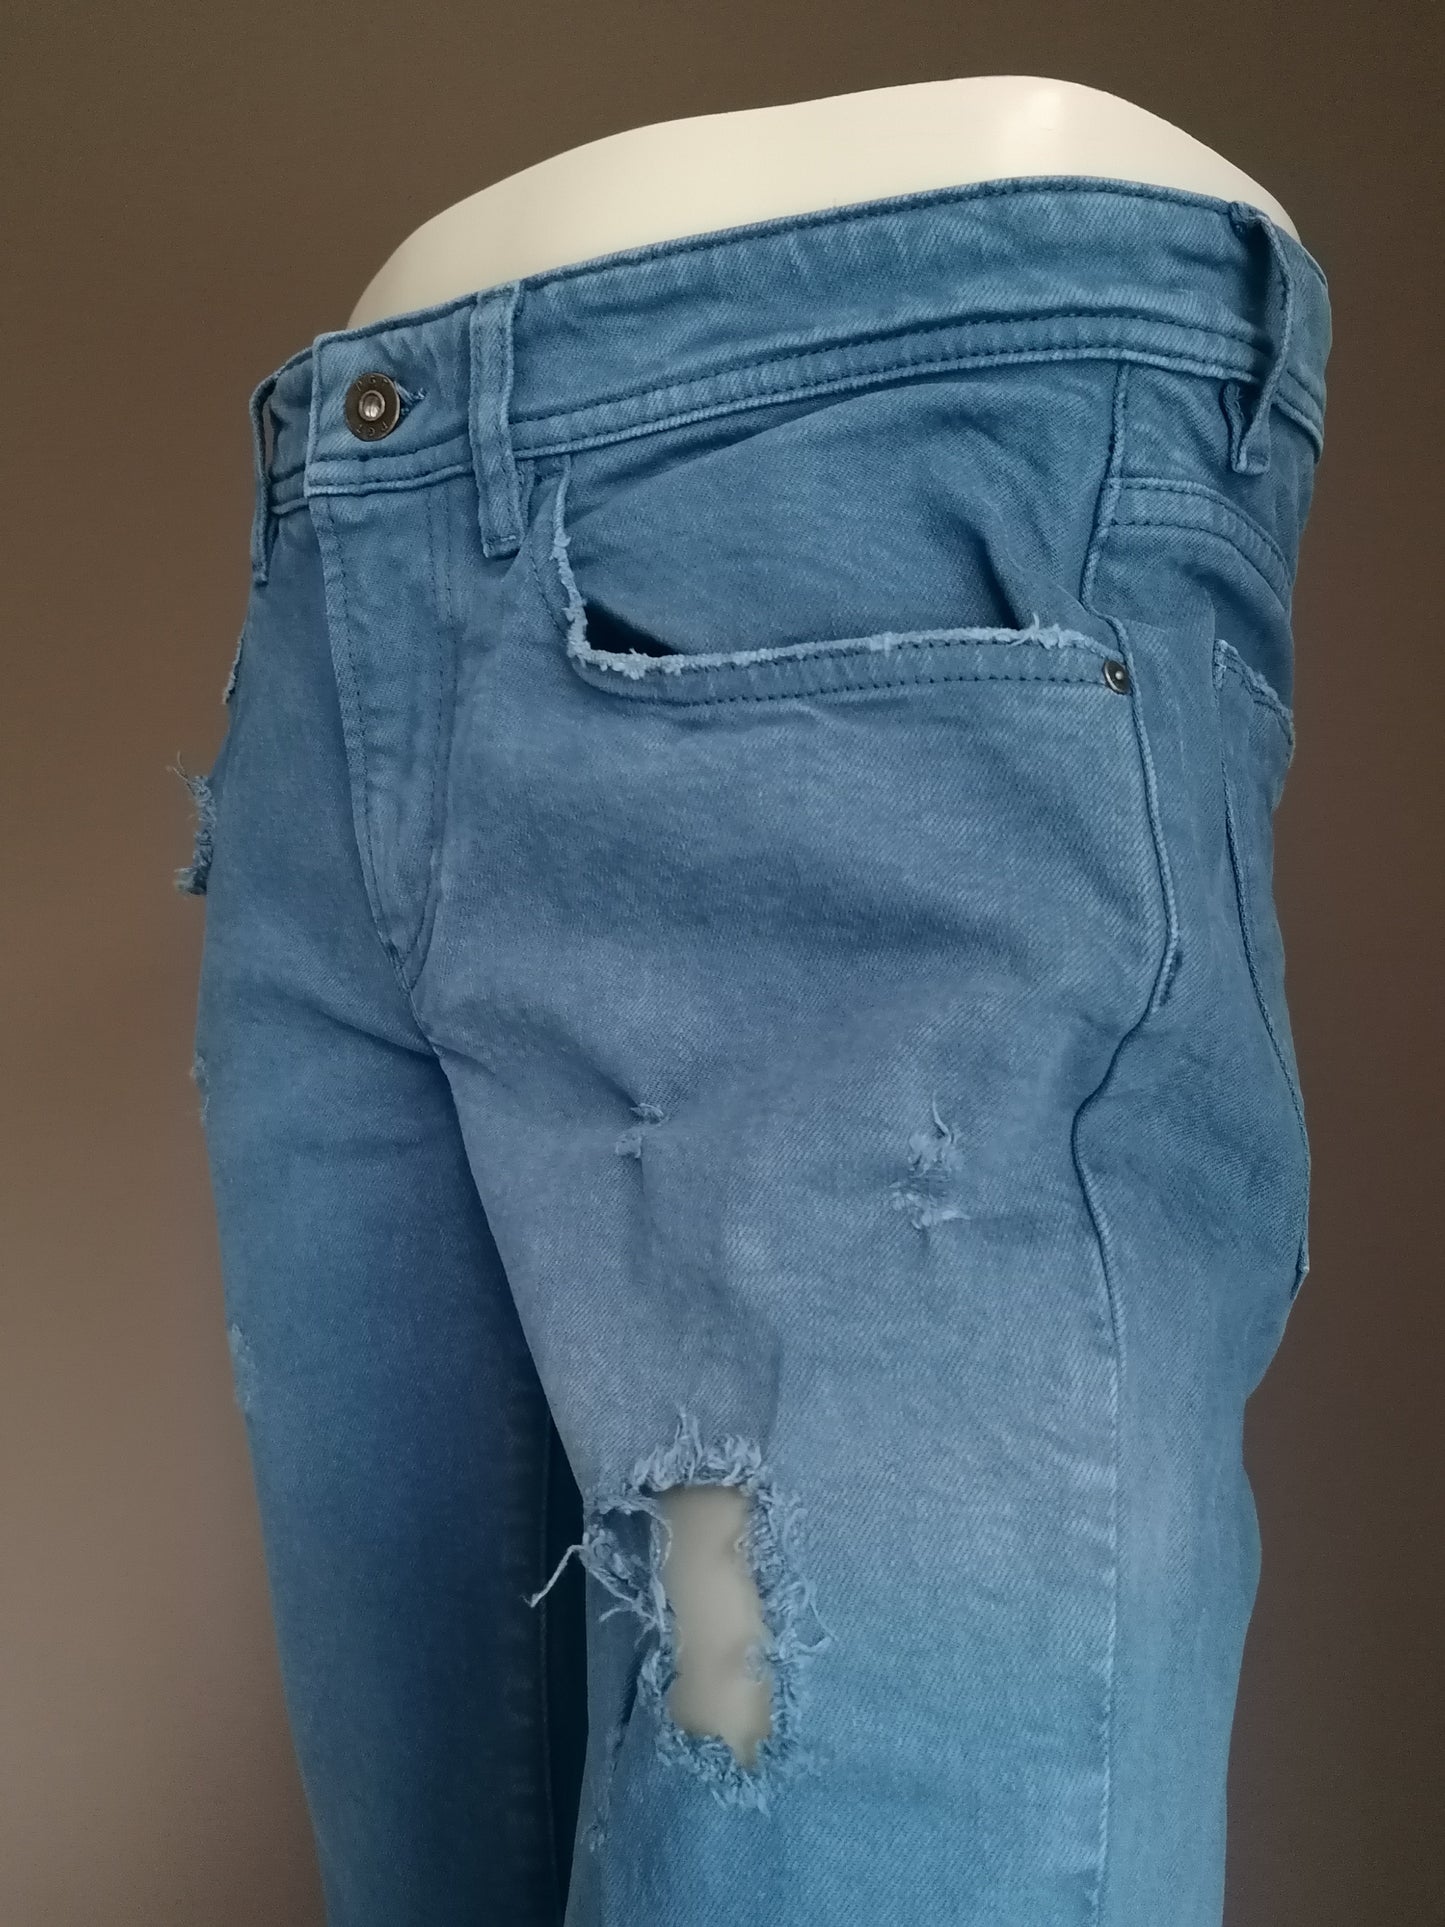 PGT riss Jeans. Blau gefärbt. Größe W32 - L32.